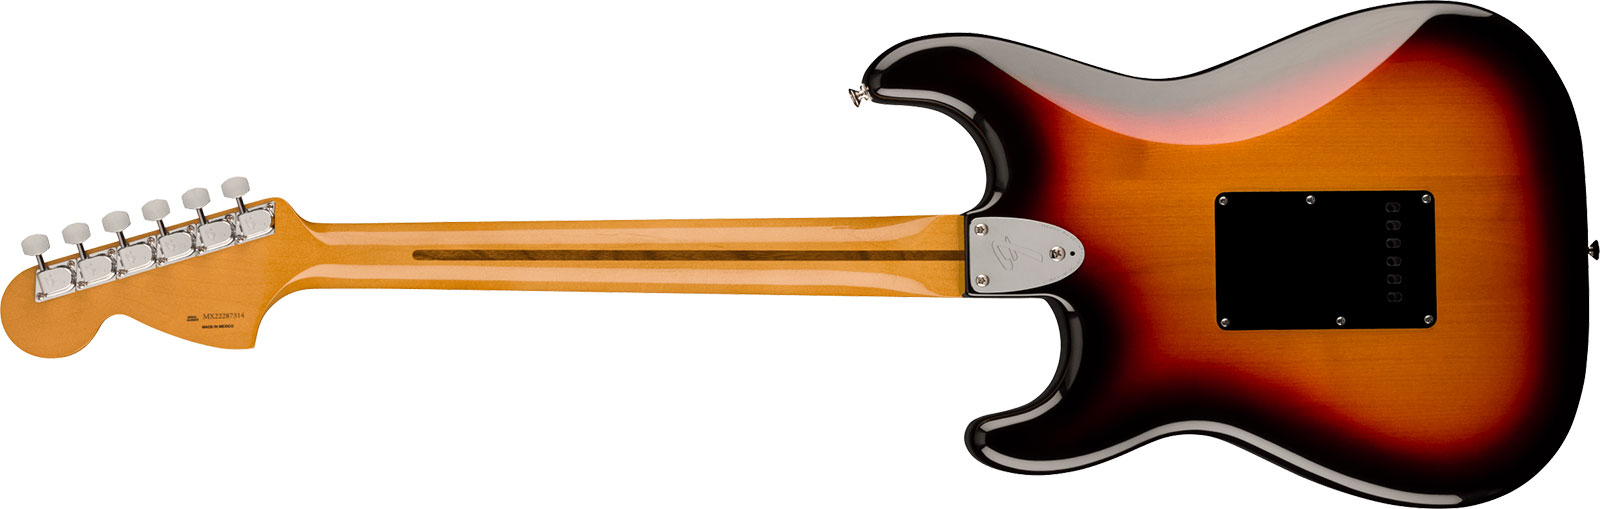 Fender Strat 70s Vintera 2 Mex 3s Trem Mn - 3-color Sunburst - Str shape electric guitar - Variation 1